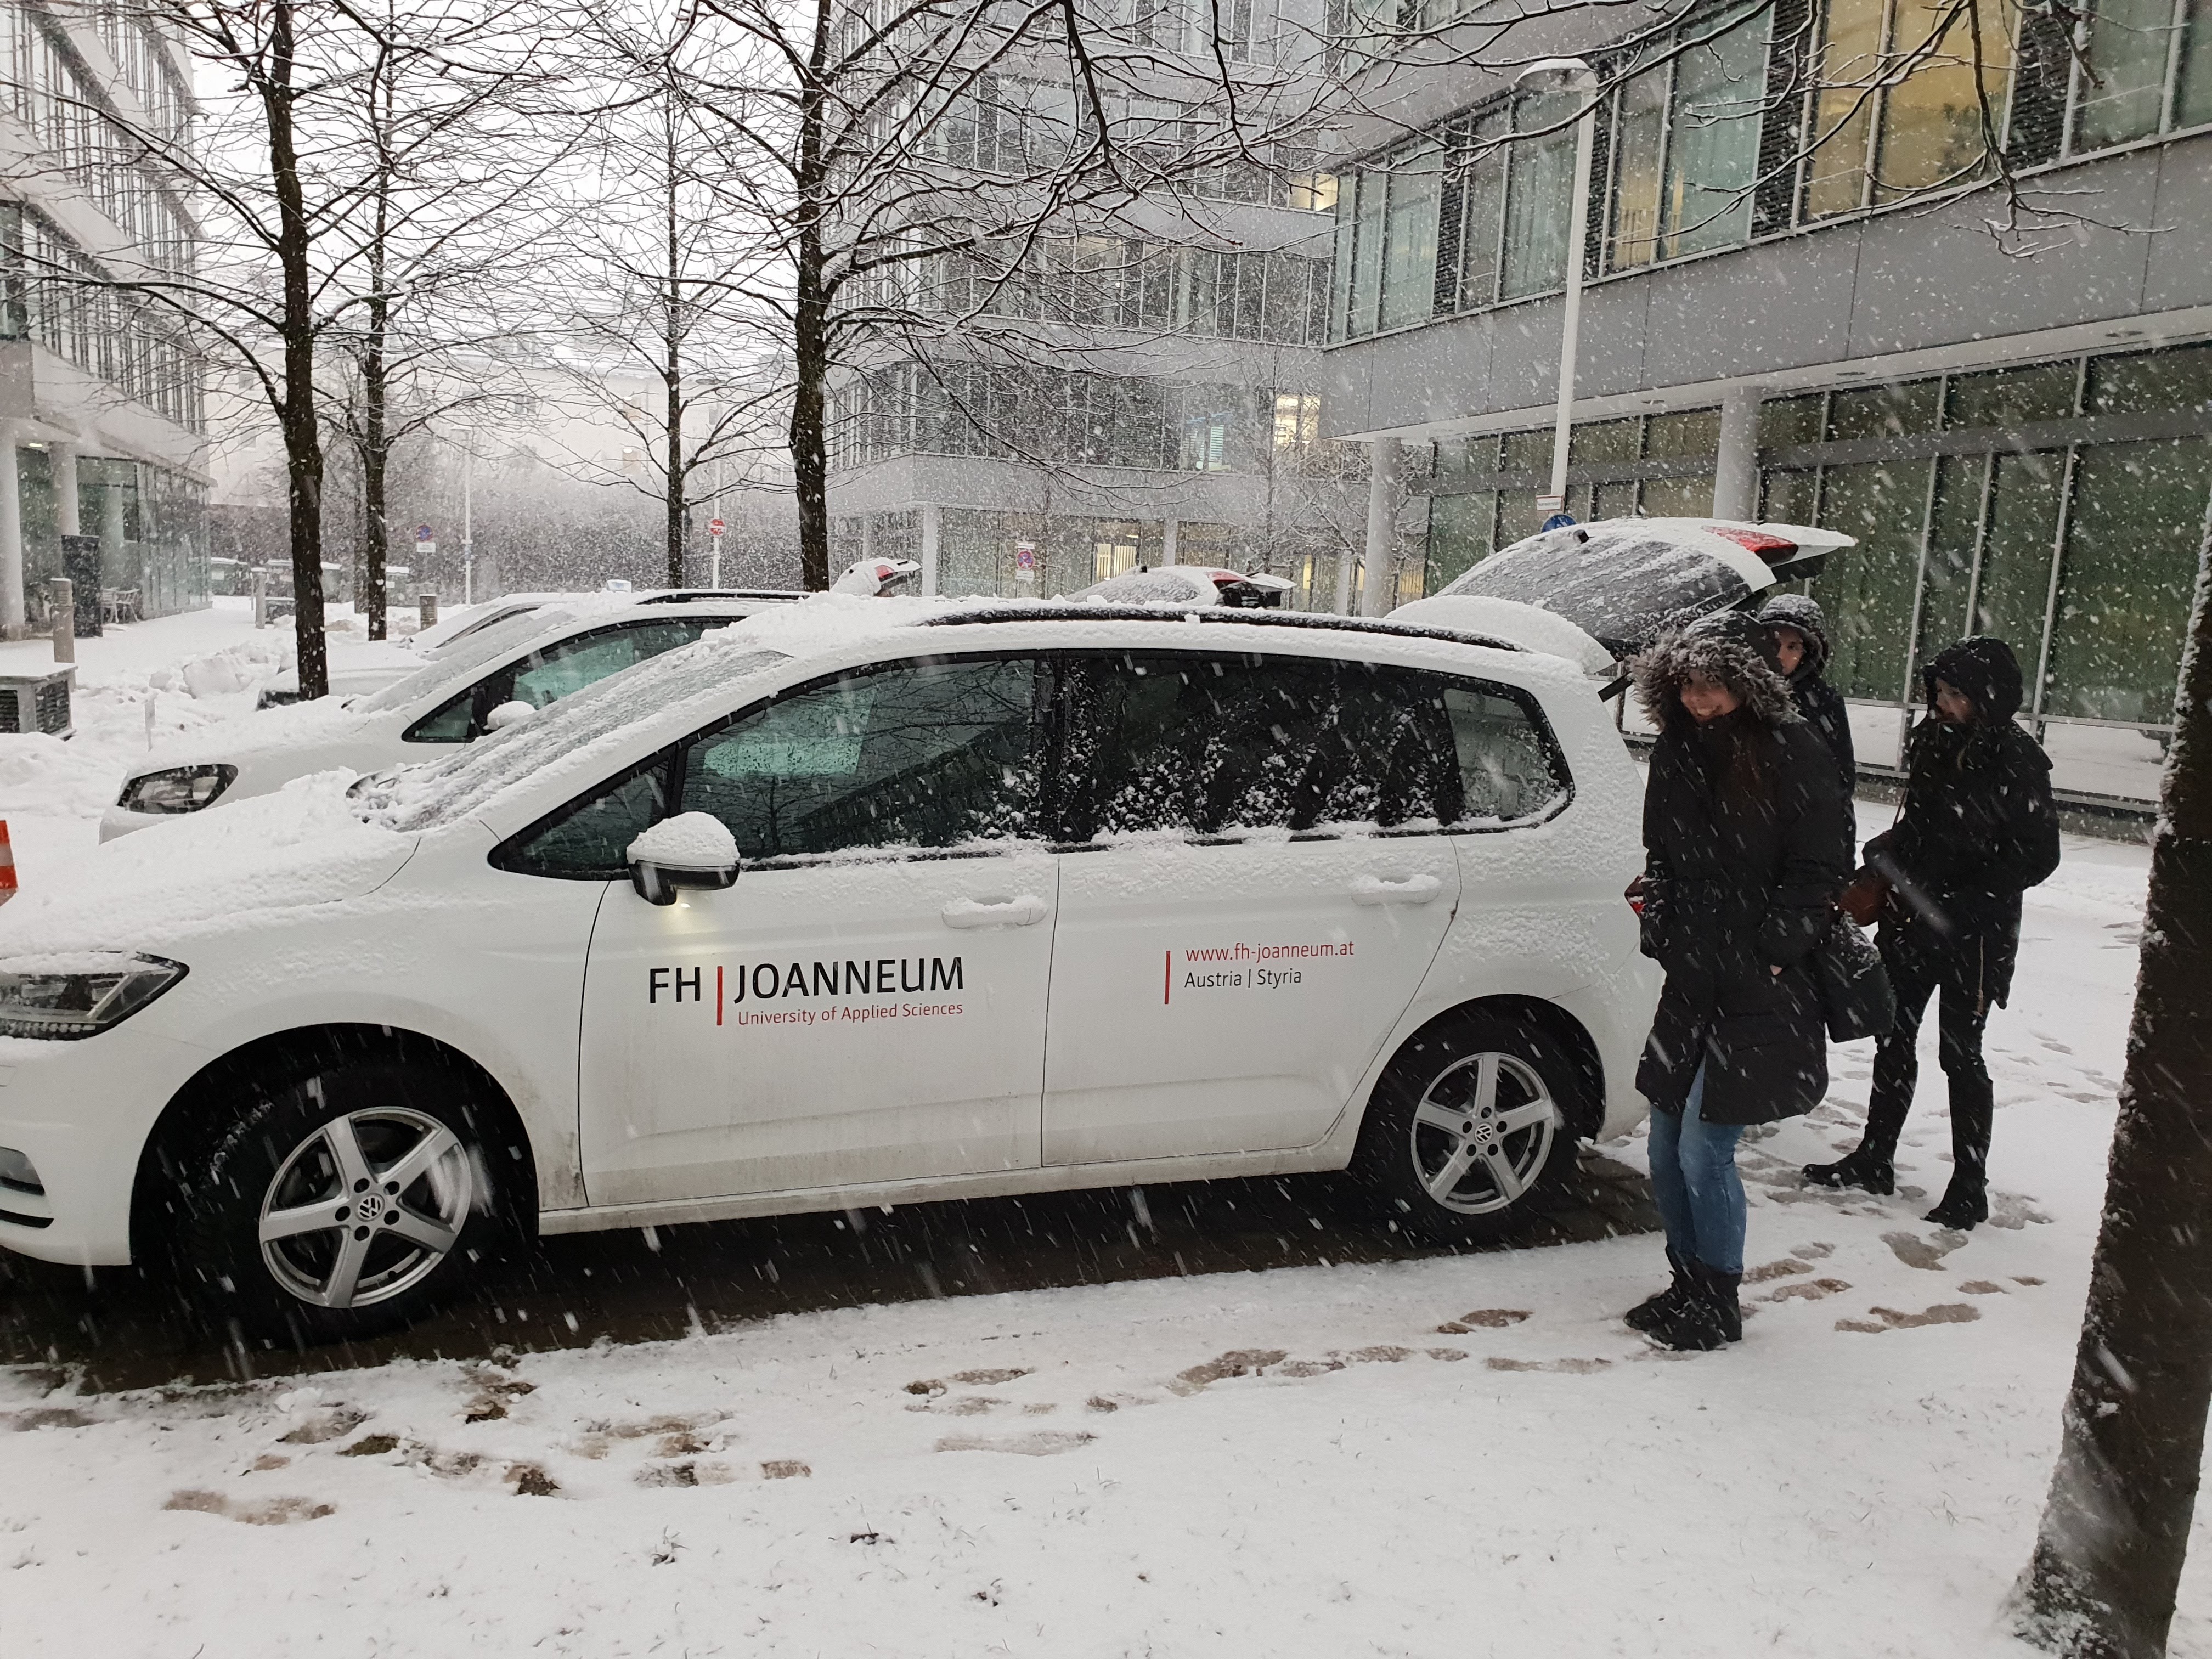 Auto der FH JOANNEUM bei dichtem Schneefall.